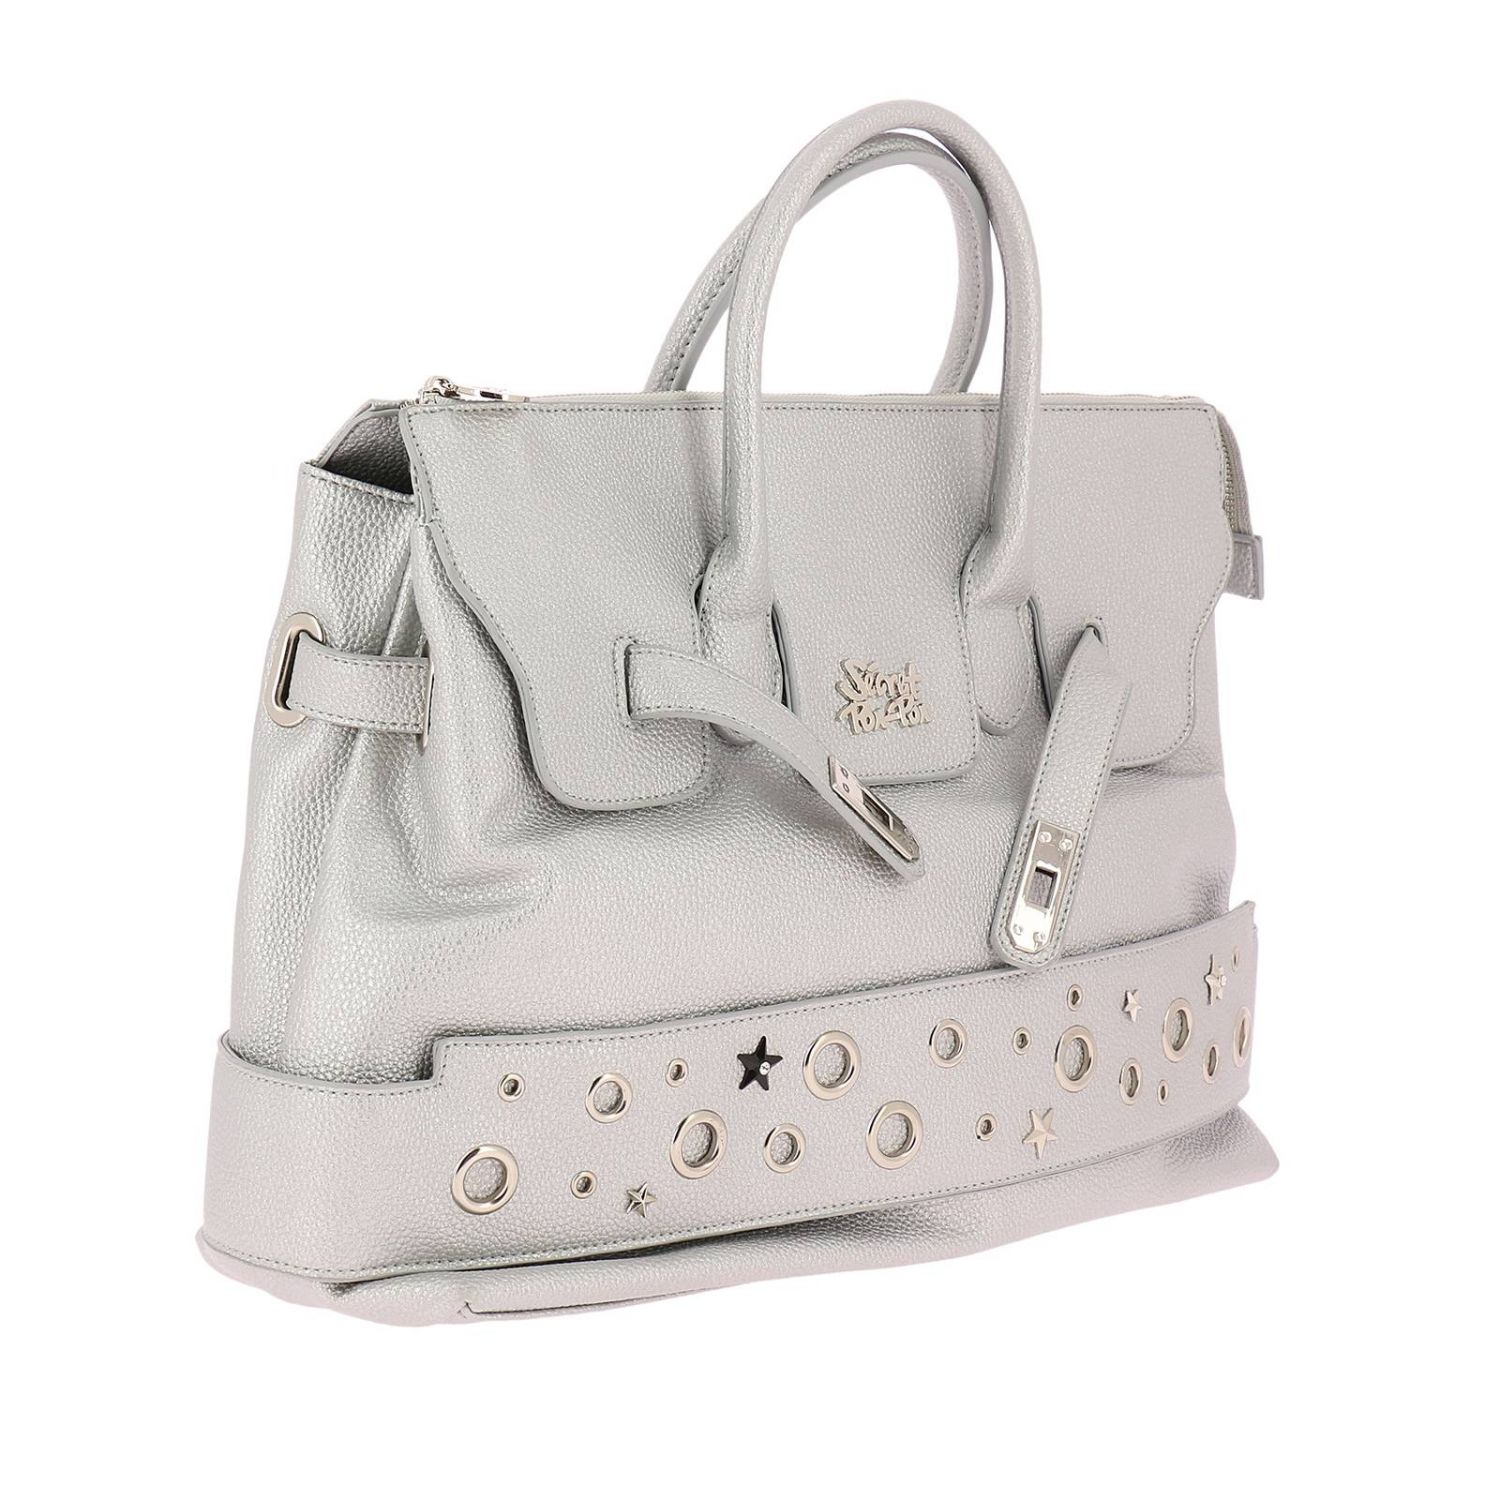 Secret Pon-Pon Outlet: Shoulder bag women - Silver | Handbag Secret Pon ...